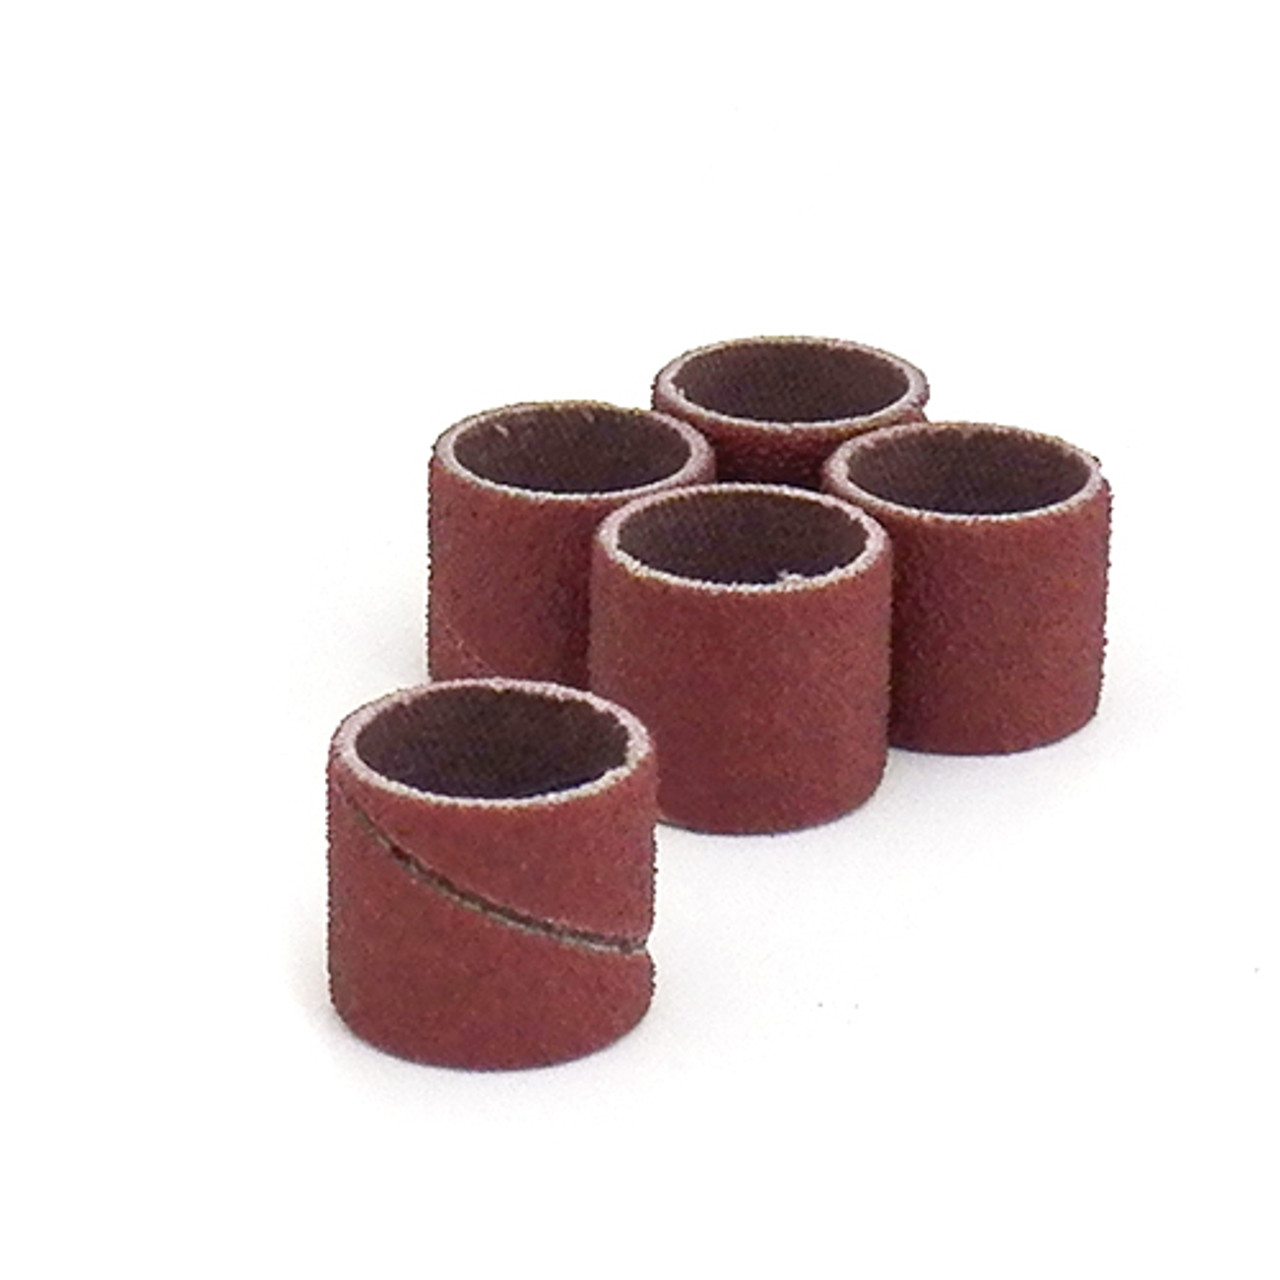 Klingspor Abrasives Aluminum Oxide Sanding Sleeves, 1/2"X 1/2" 150 Grit, 5pk